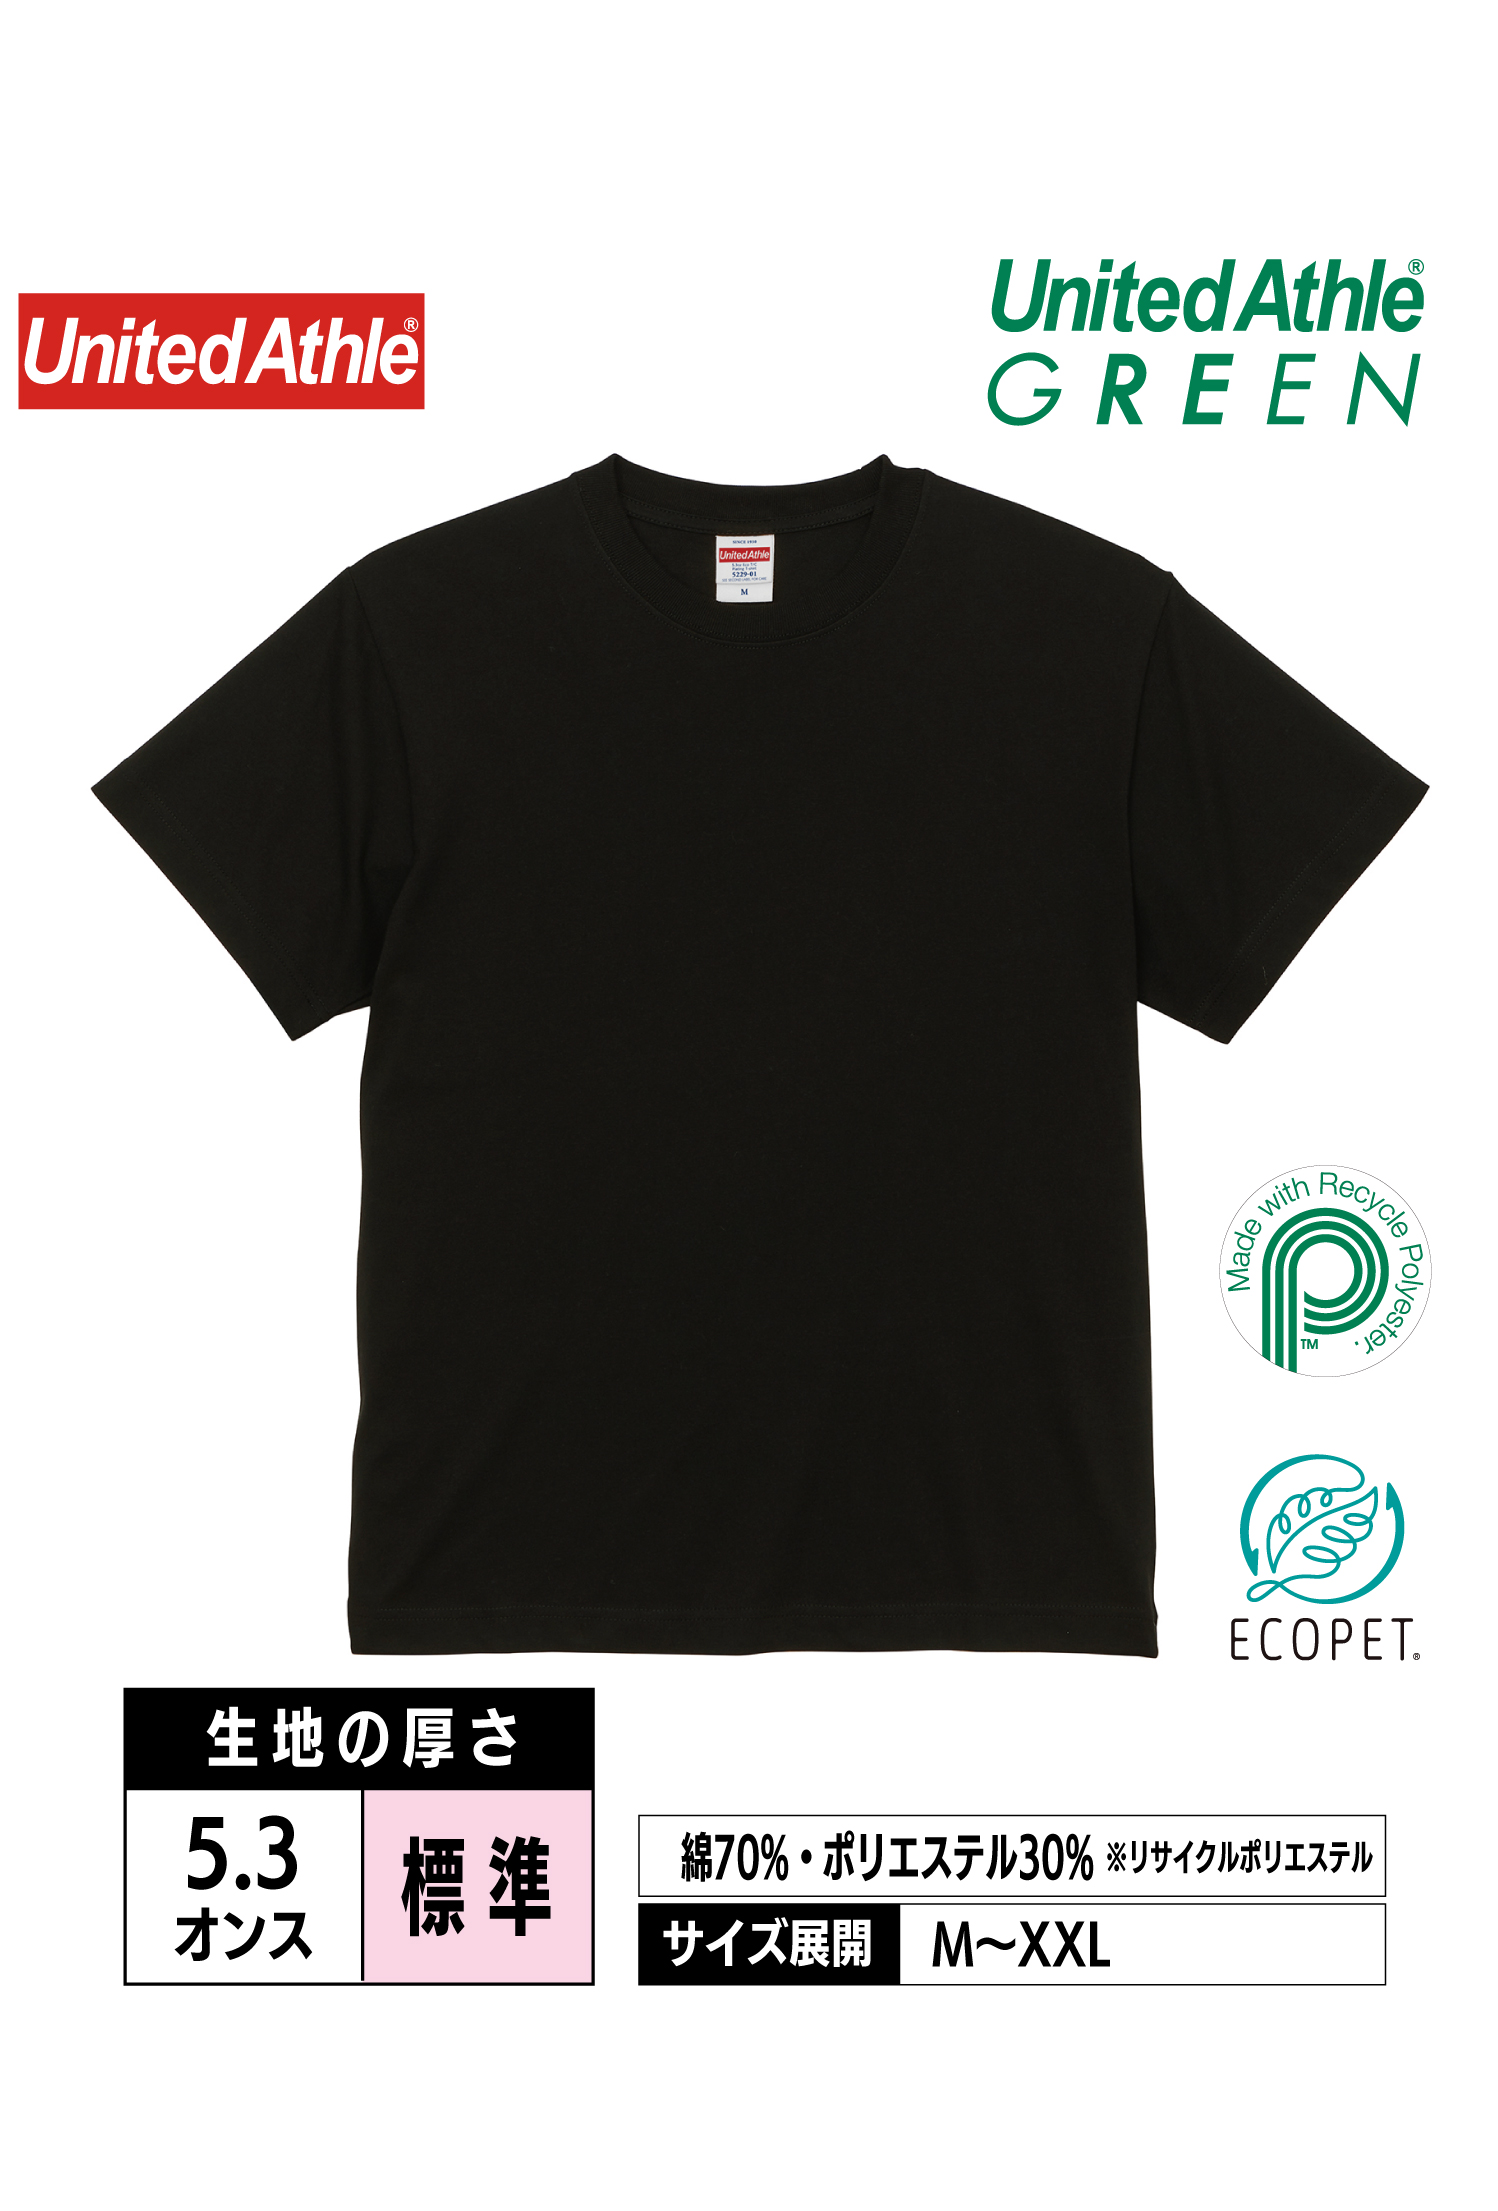 5229-01｜5.3オンス エコT/CプレーティングTシャツ【全2色】United Athle GREEN